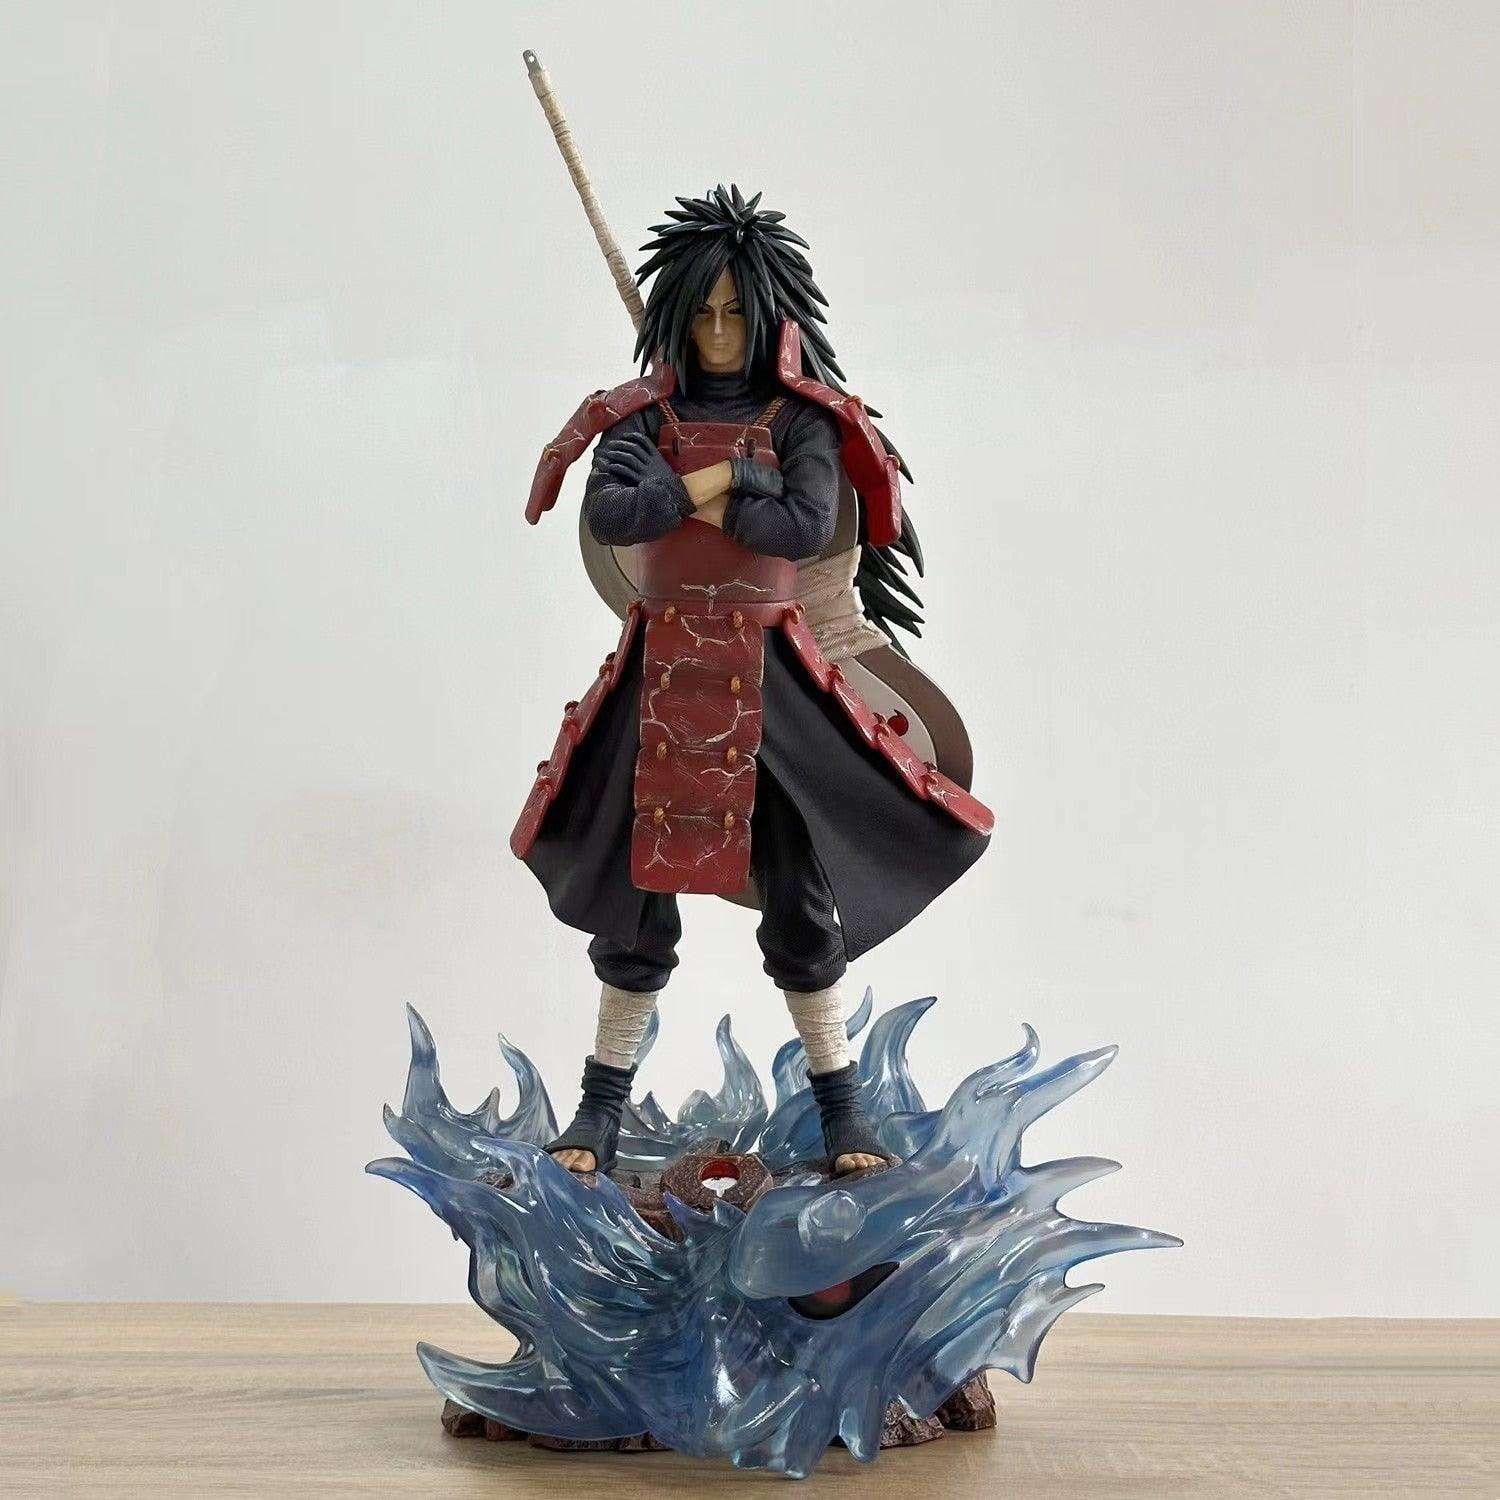 Naruto: Shippuden Madara Uchiha 1/4 Scale Statue